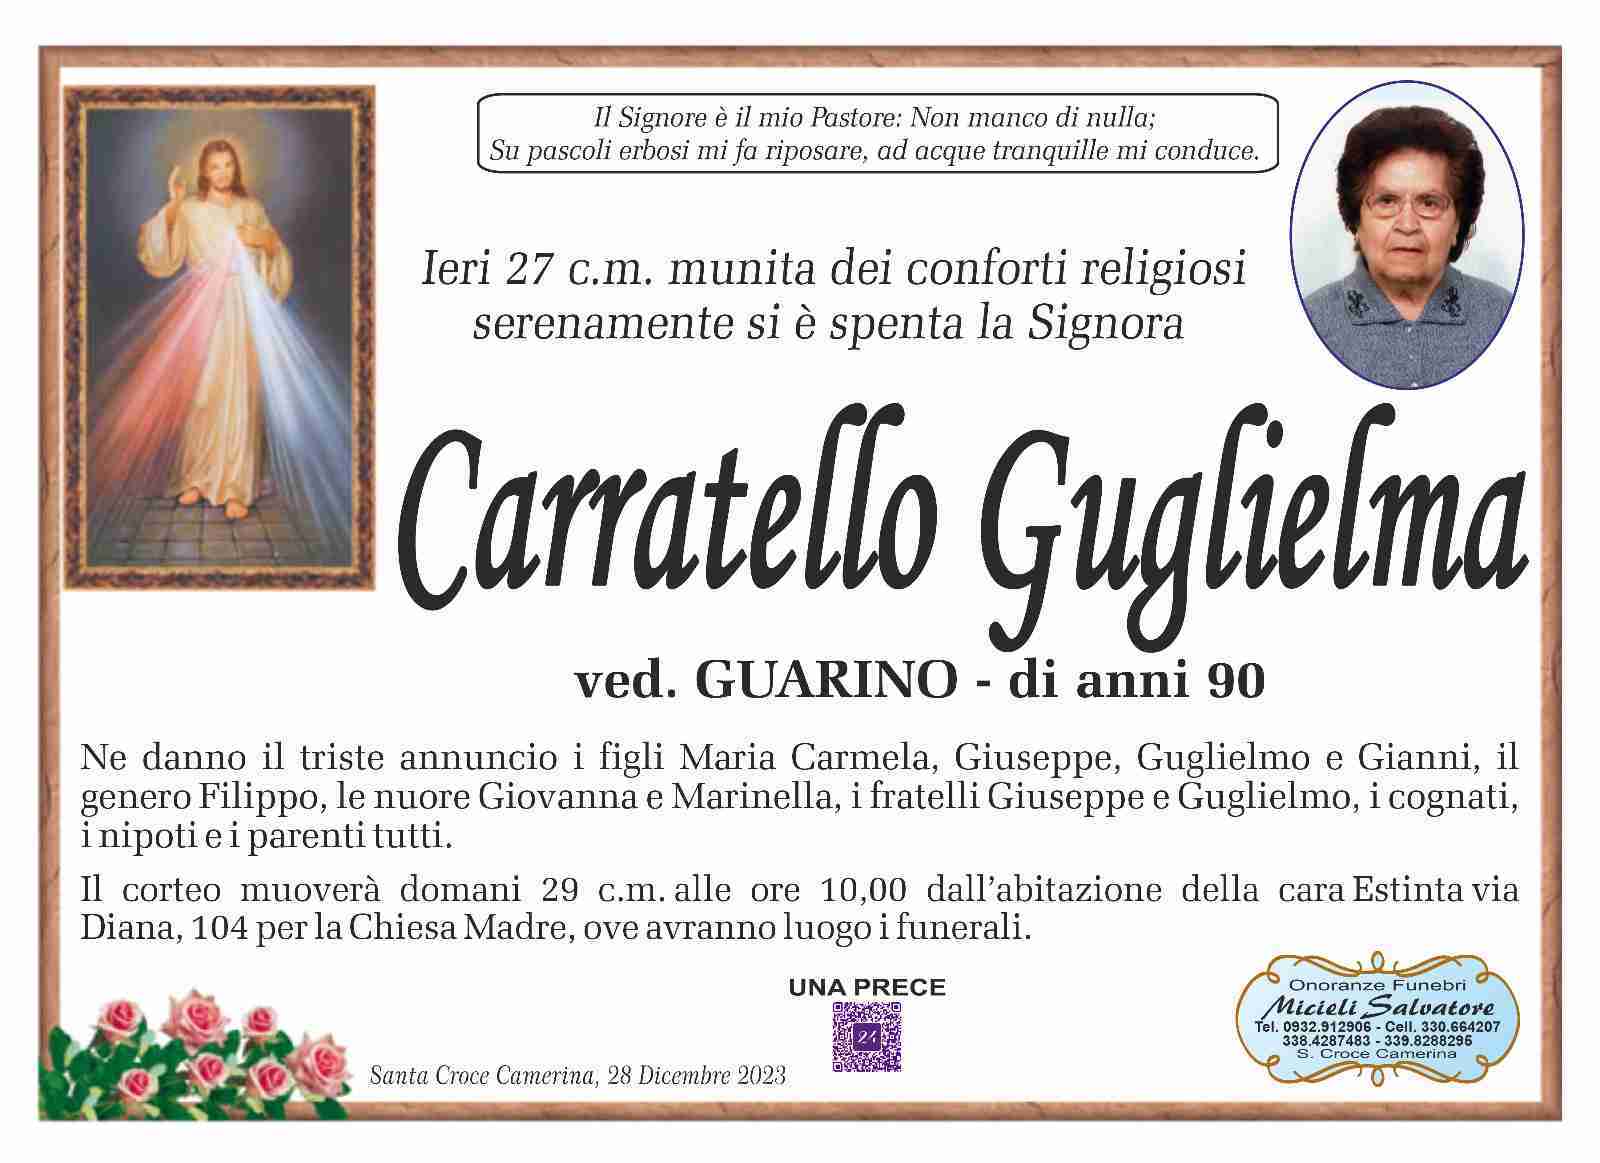 Guglielmo Carratello